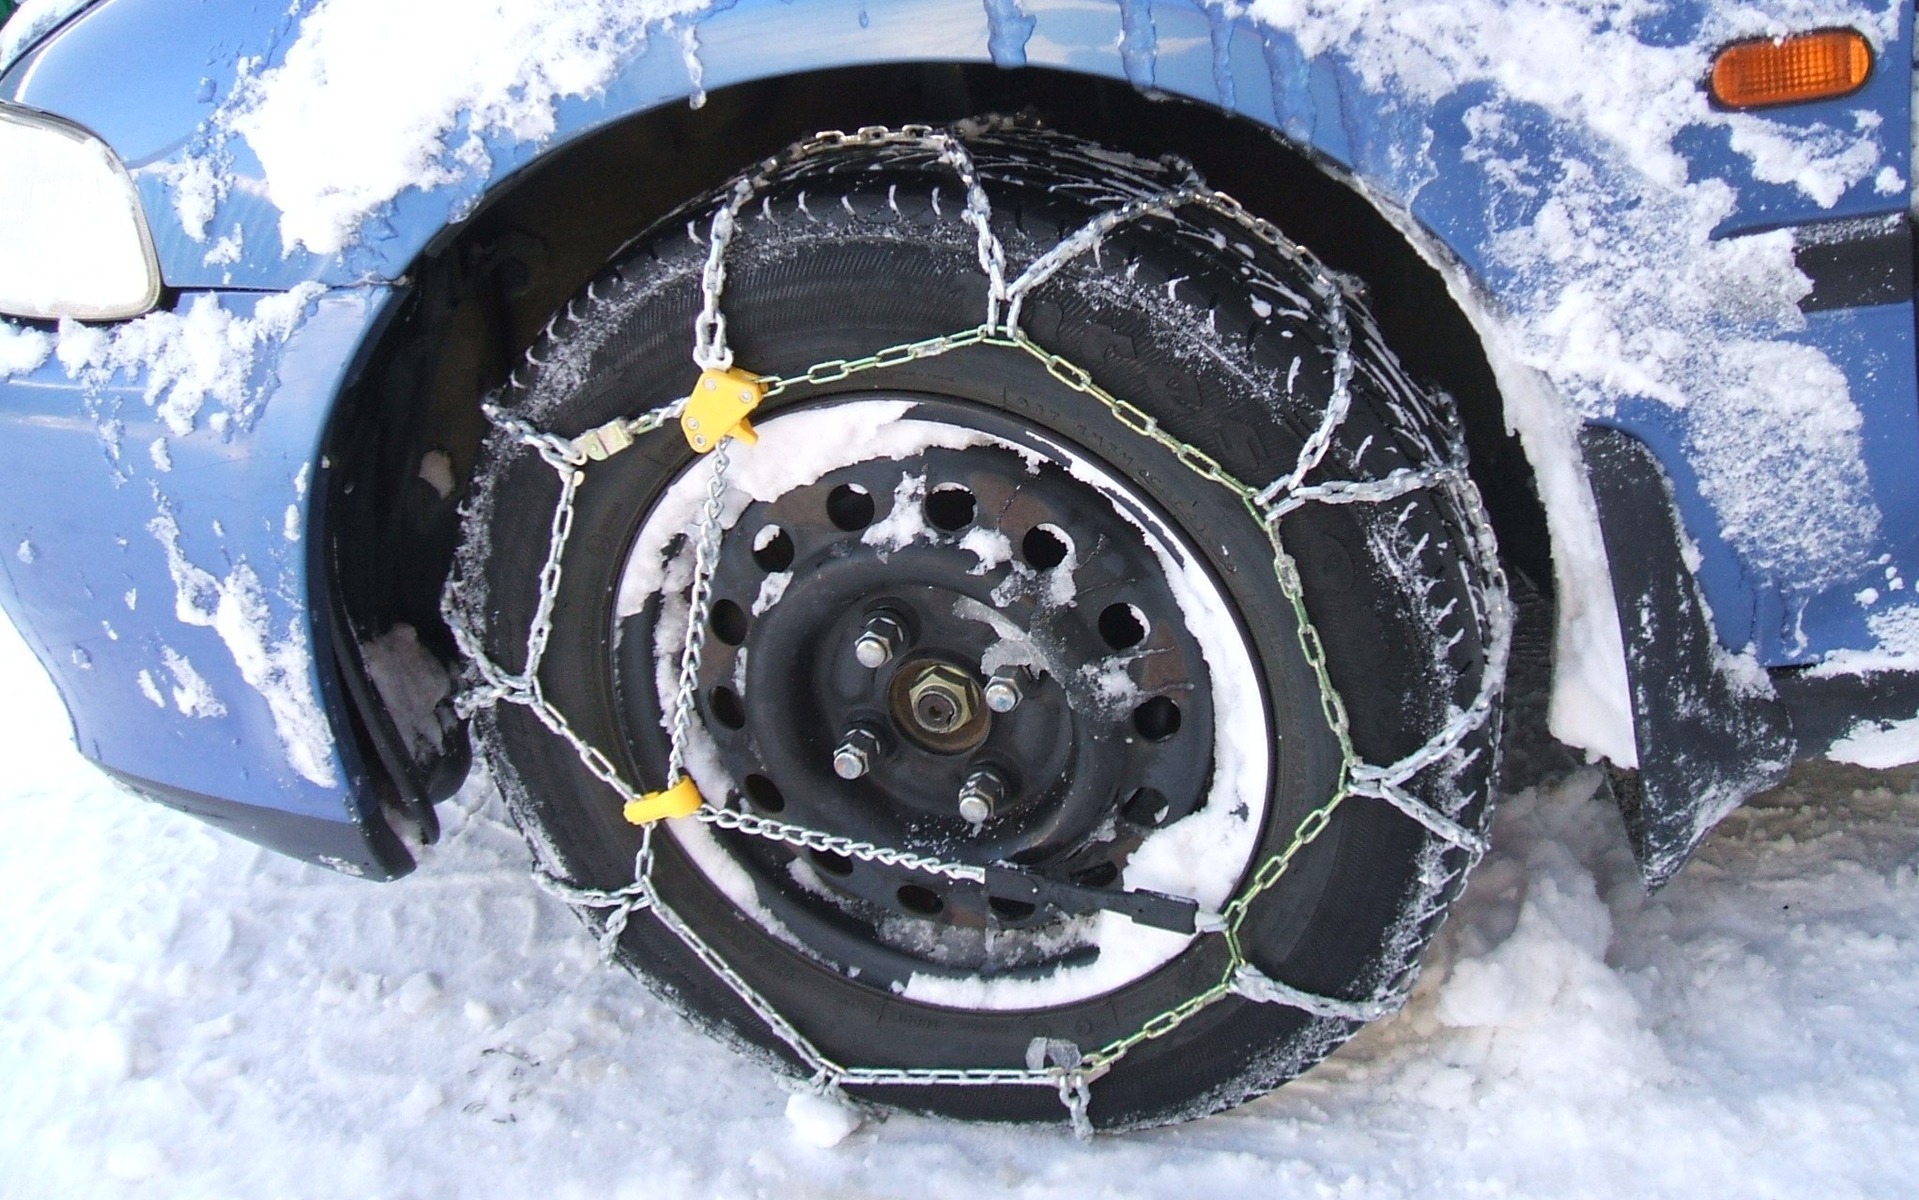 Chaines neige - Équipement auto